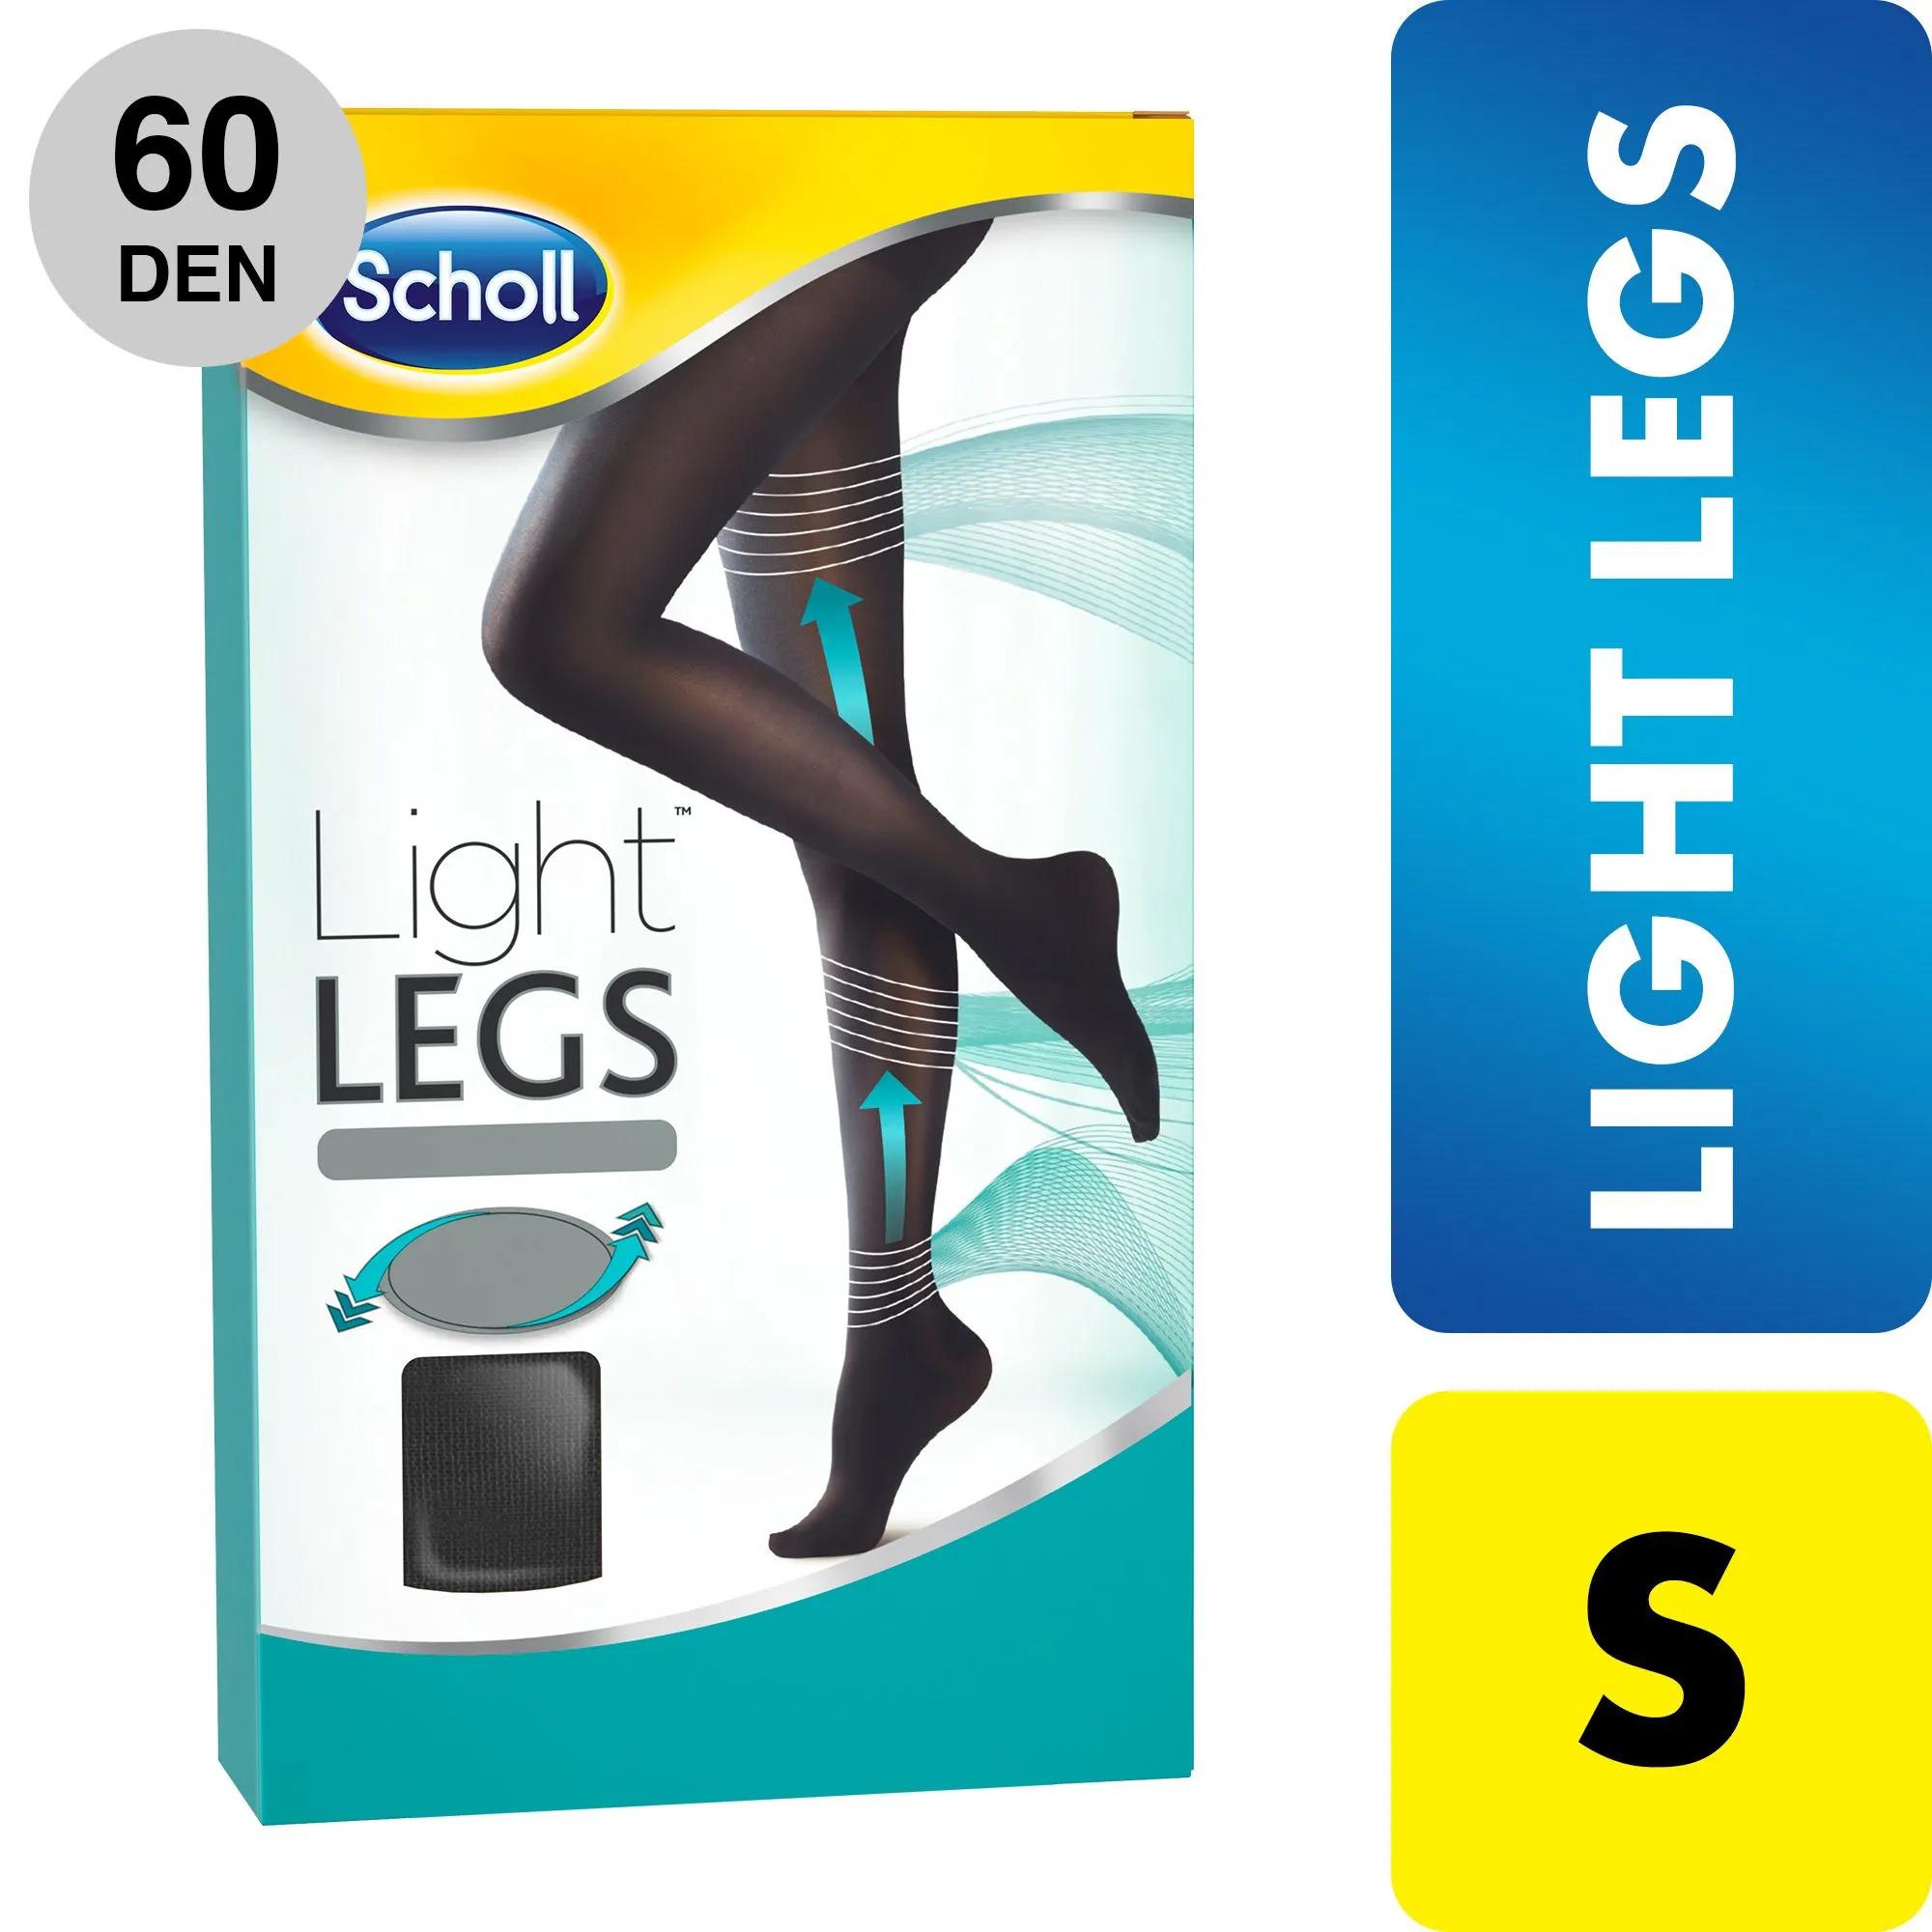 Scholl Light LEGS velikost S 60 DEN černé kompresní punčochové kalhoty 1 ks